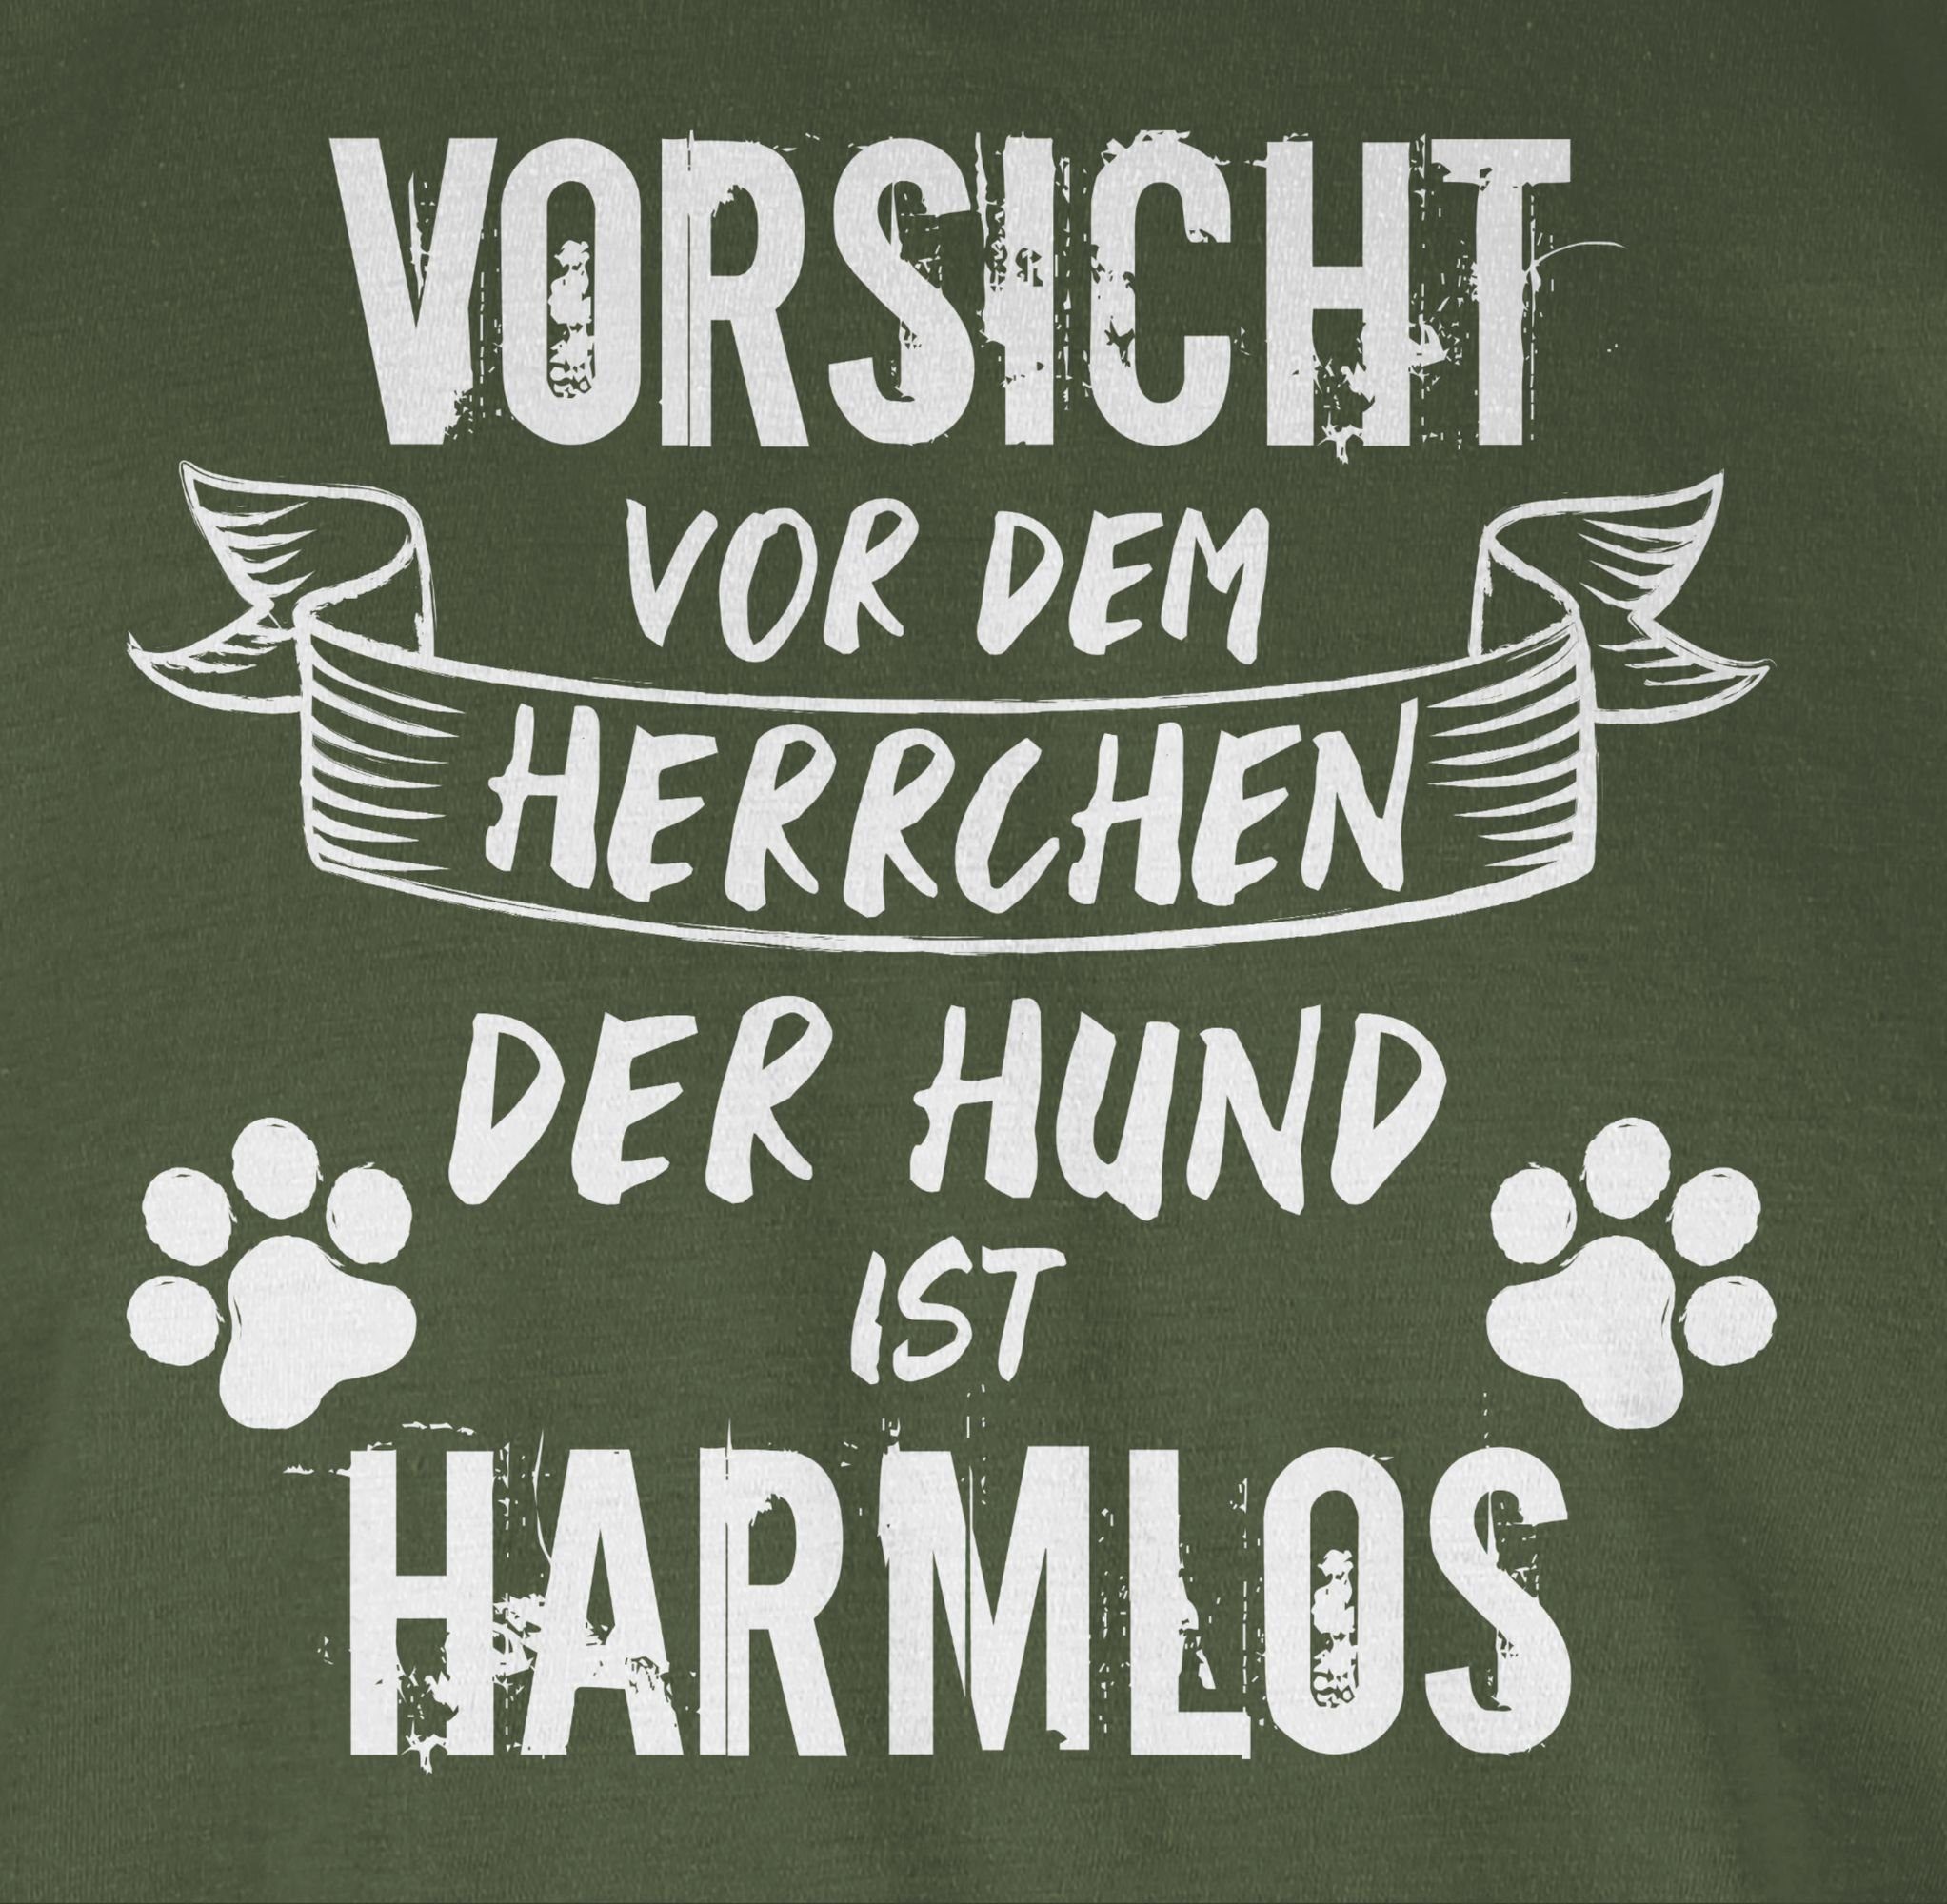 Herrchen Hundebesitzer Army - 03 Geschenk der Shirtracer vor T-Shirt für - Hund Grün Grunge/Vintage ist dem Vorsicht Weiß harmlos